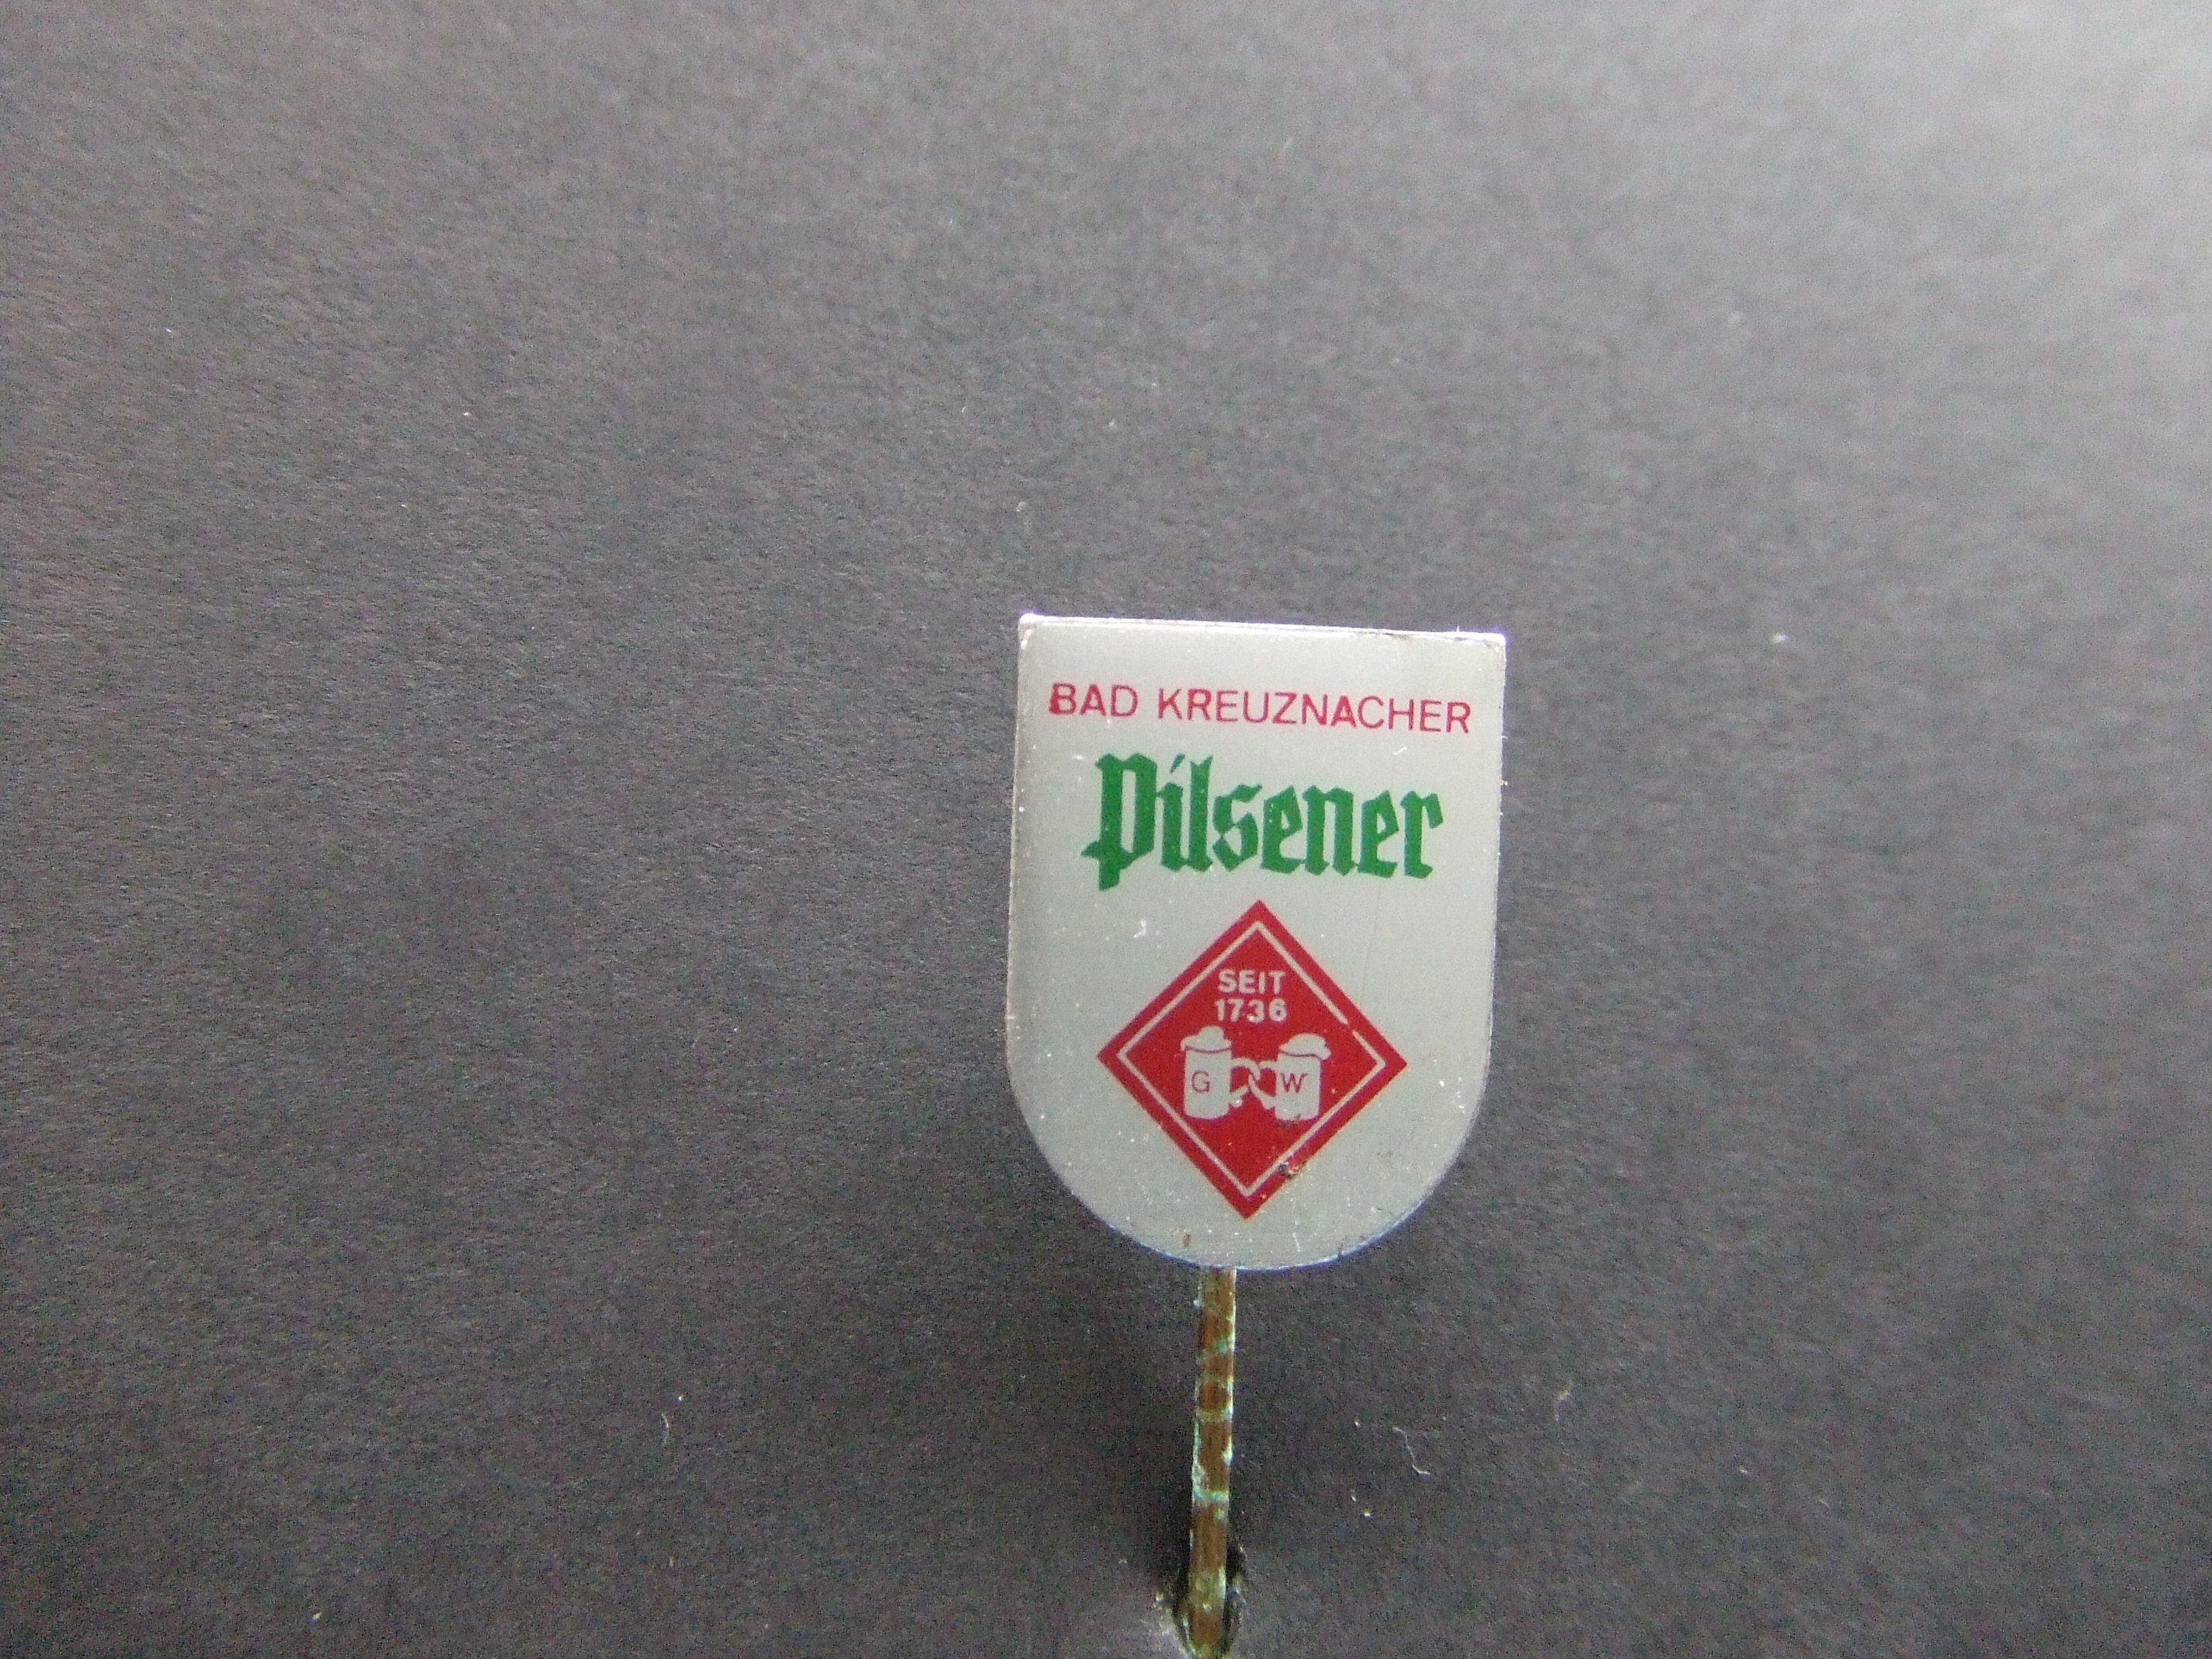 Bad Kreuznacher Pilsener Duits bier